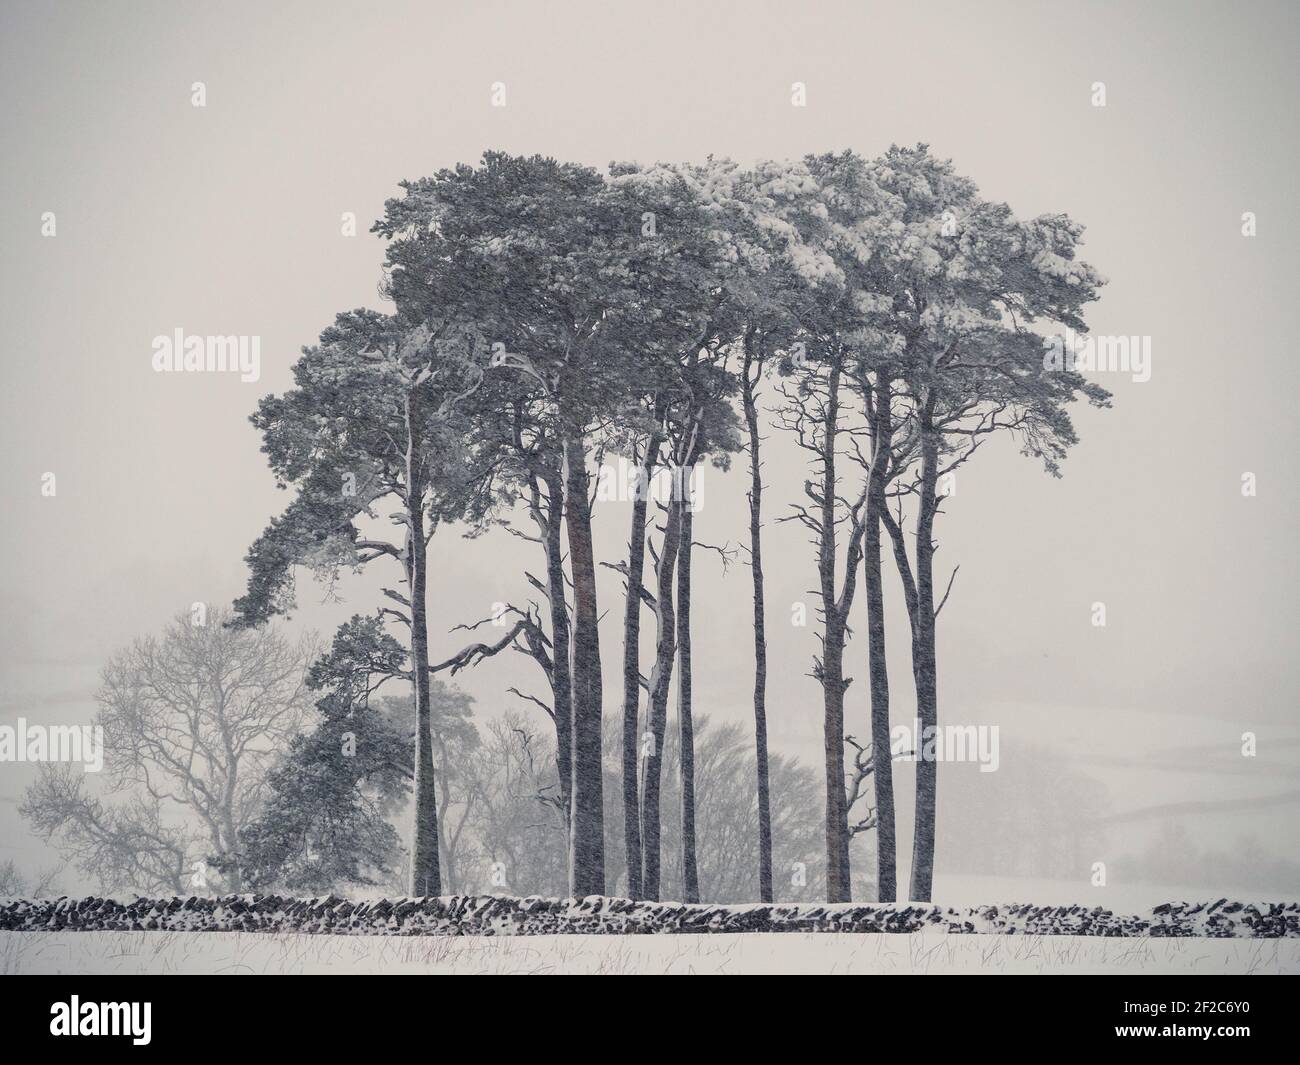 Manta de nieve en el stand de pinos escoceses (Pinus sylvestris), pino  escocés, pino rojo europeo, o pino Báltico en una ventisca en invierno en  Cumbria, Reino Unido Fotografía de stock -